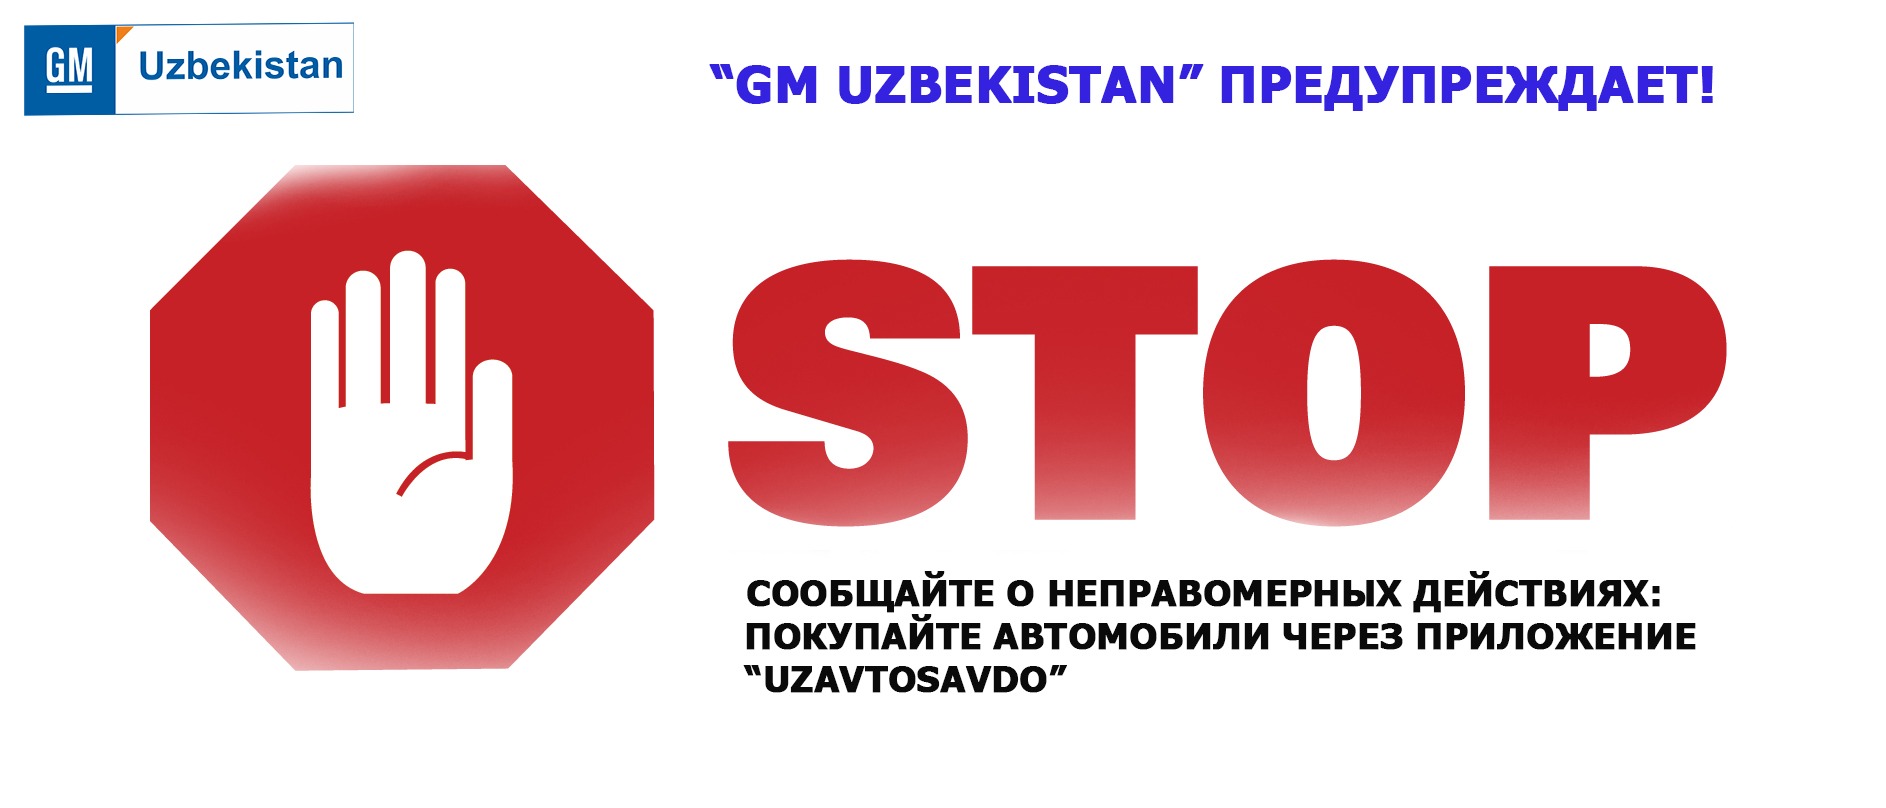 Tamagirlikka yo'l qo'yilmaydi: “GM Uzbekistan” avtomobillarni “Uzavtosavdo” orqali xarid qiling!